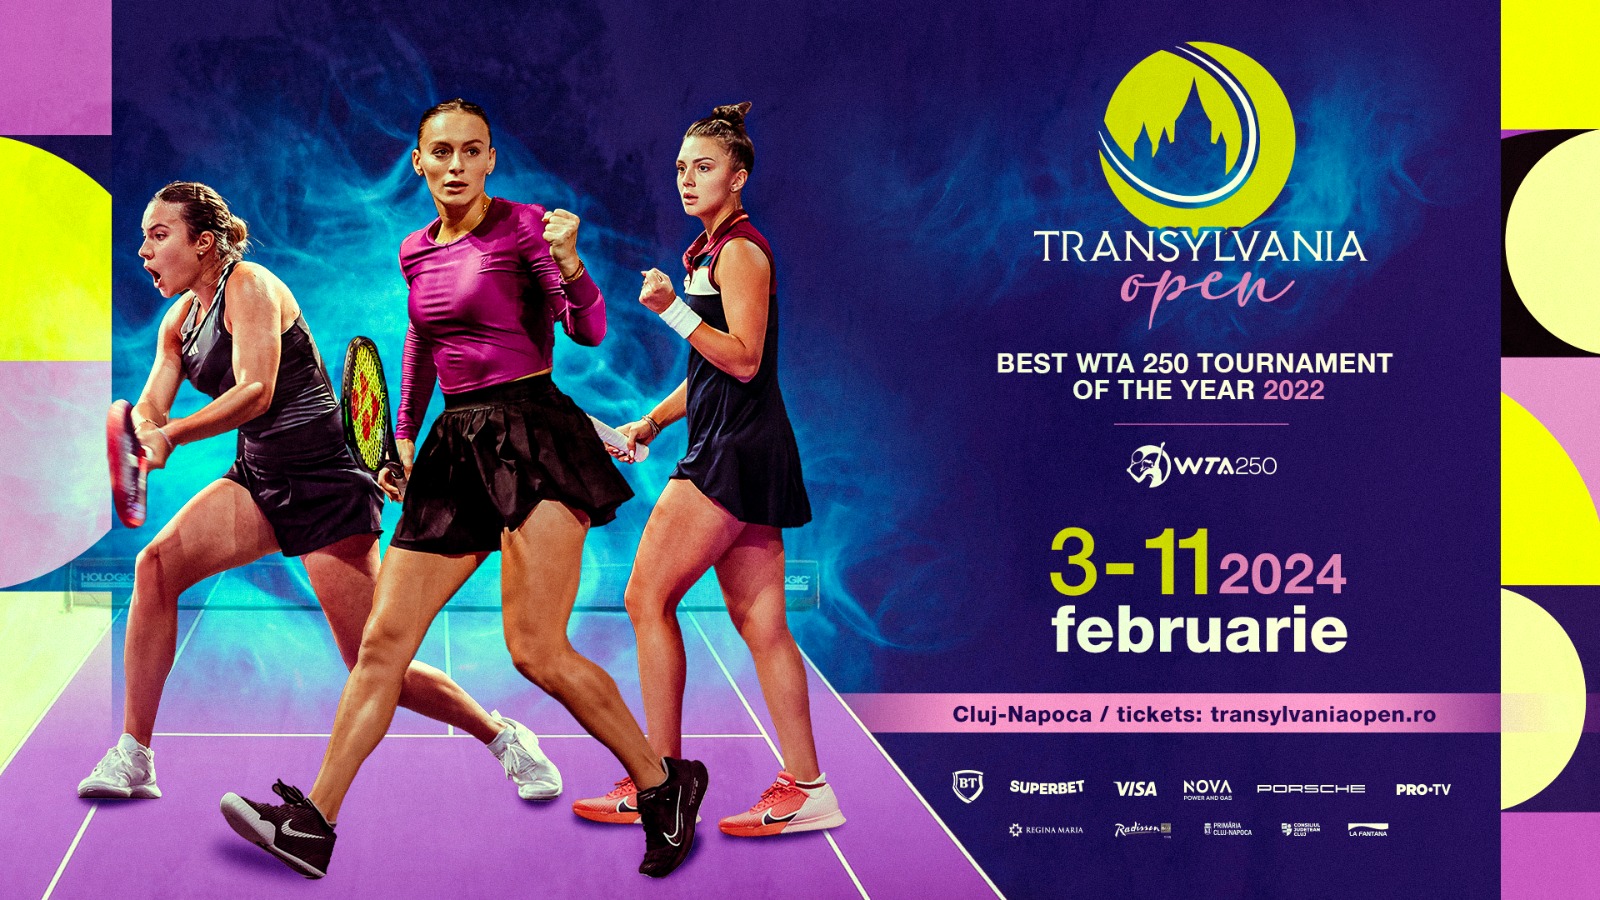 Noua ediție Transylvania Open WTA 250 începe în forță!